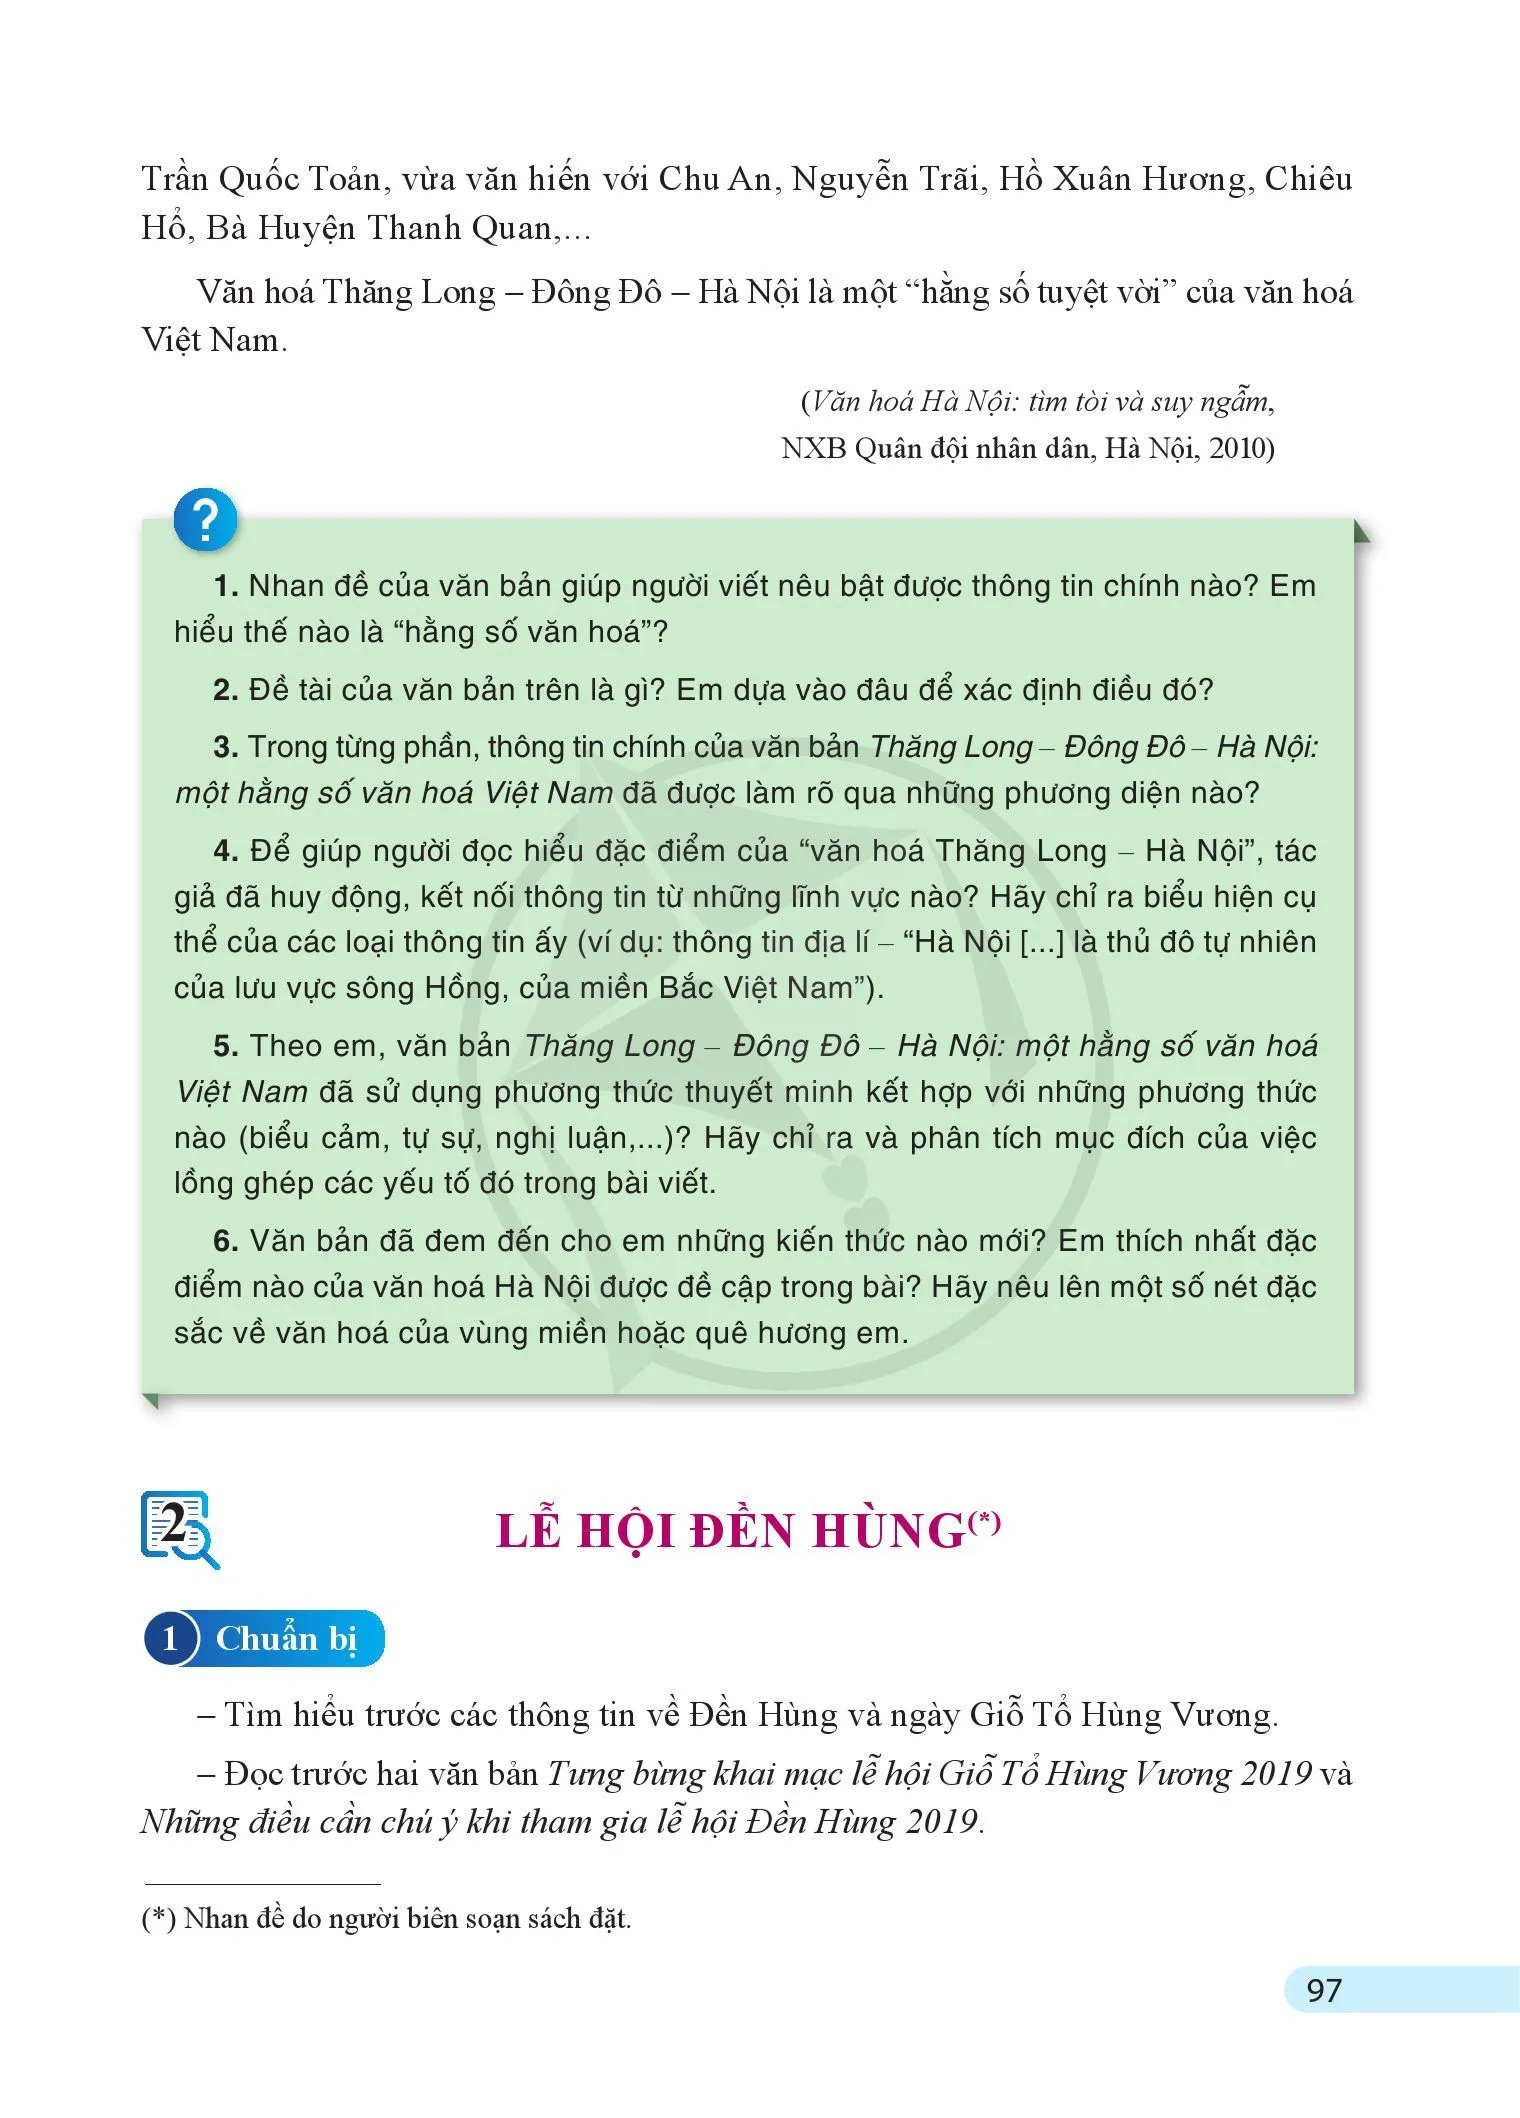 - Thăng Long – Đông Đô – Hà Nội: một hằng số văn hoả Việt Nam (Trần Quốc Vượng)